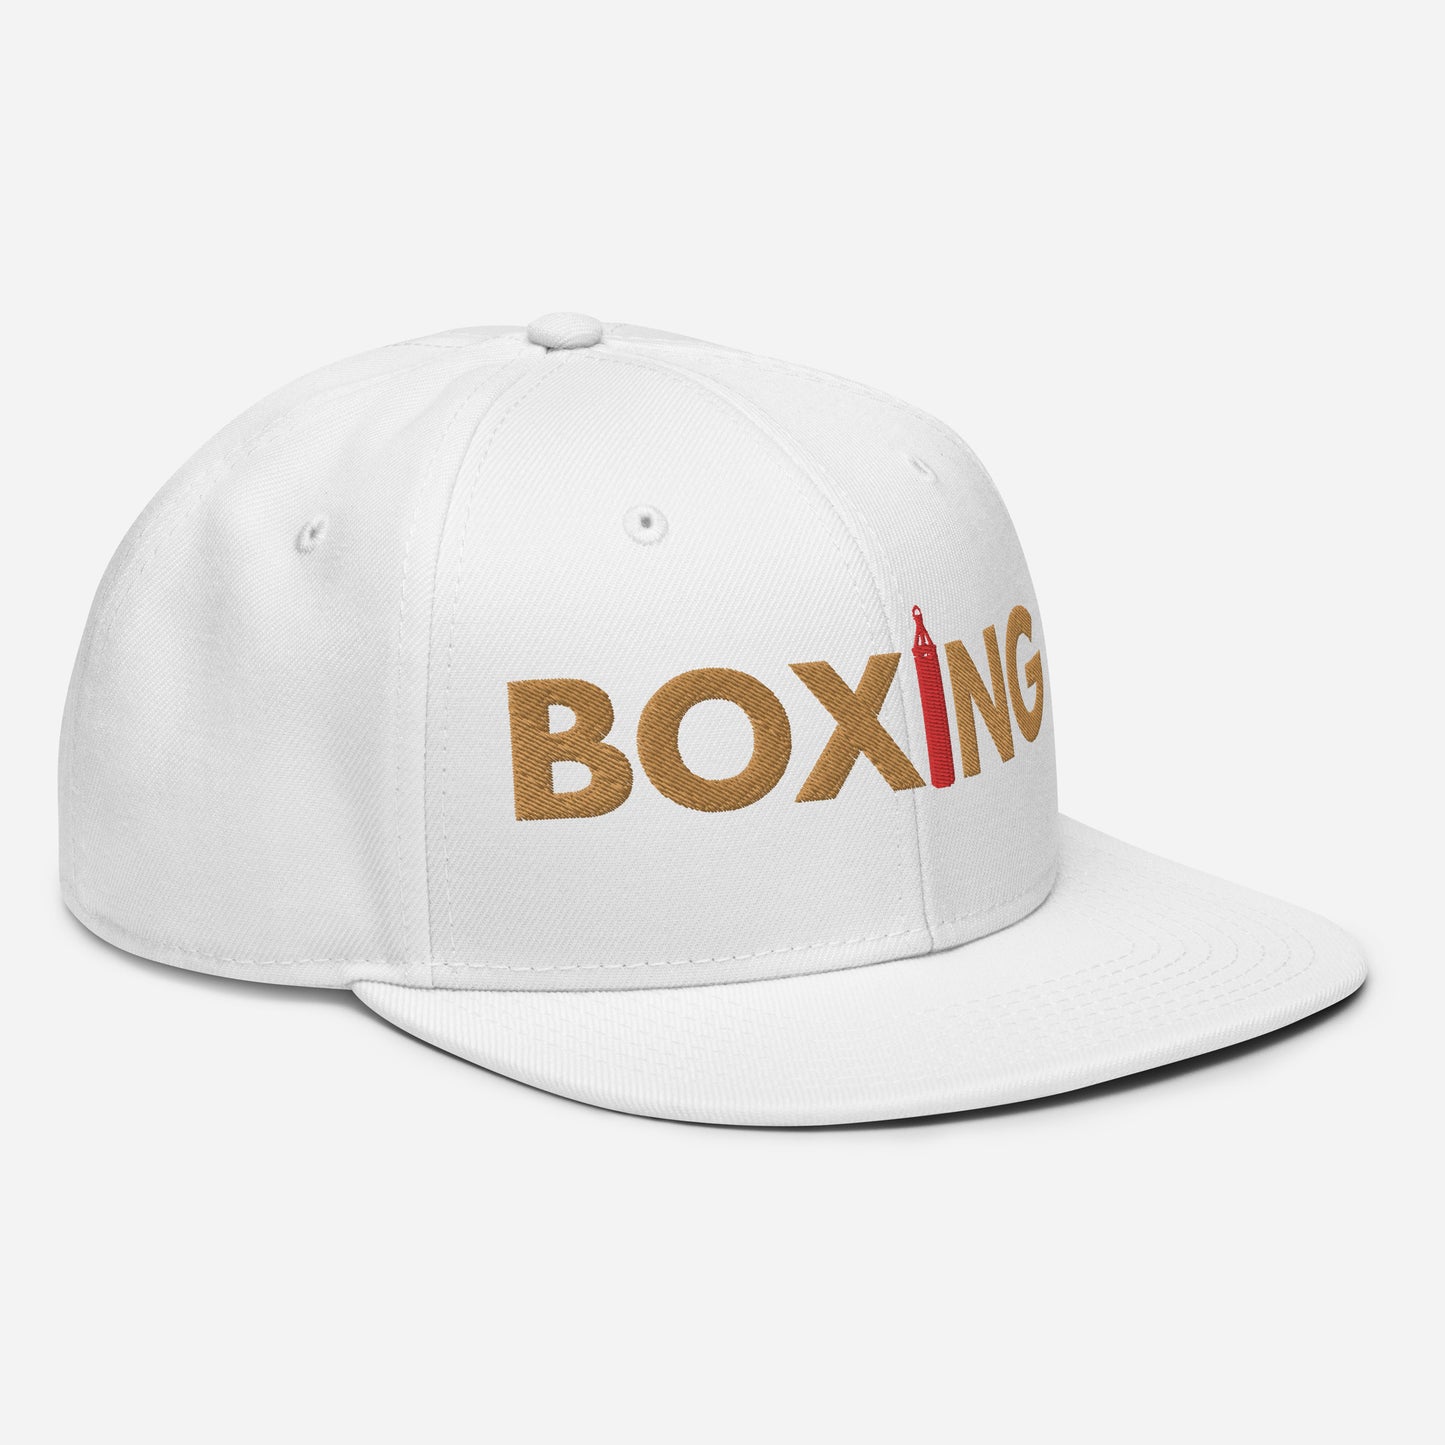 Boxing "OG" Snapback Hat